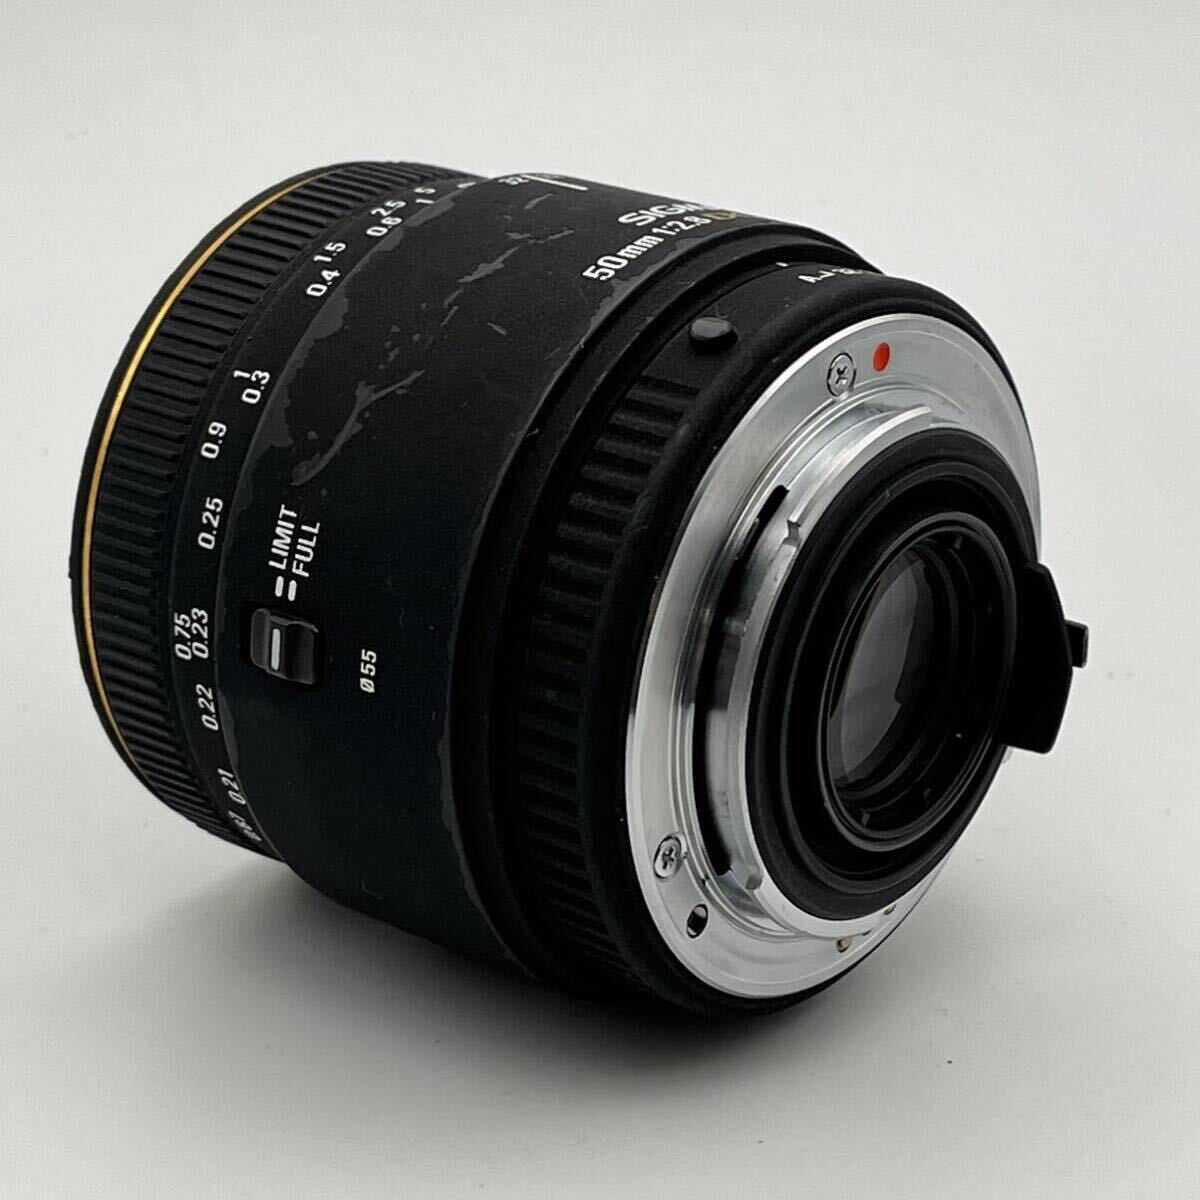 SIGMA MACRO 50mm F2.8 EX DG シグマ マクロ PENTAX ペンタックス Kマウント フルサイズ対応 標準マクロレンズの画像7